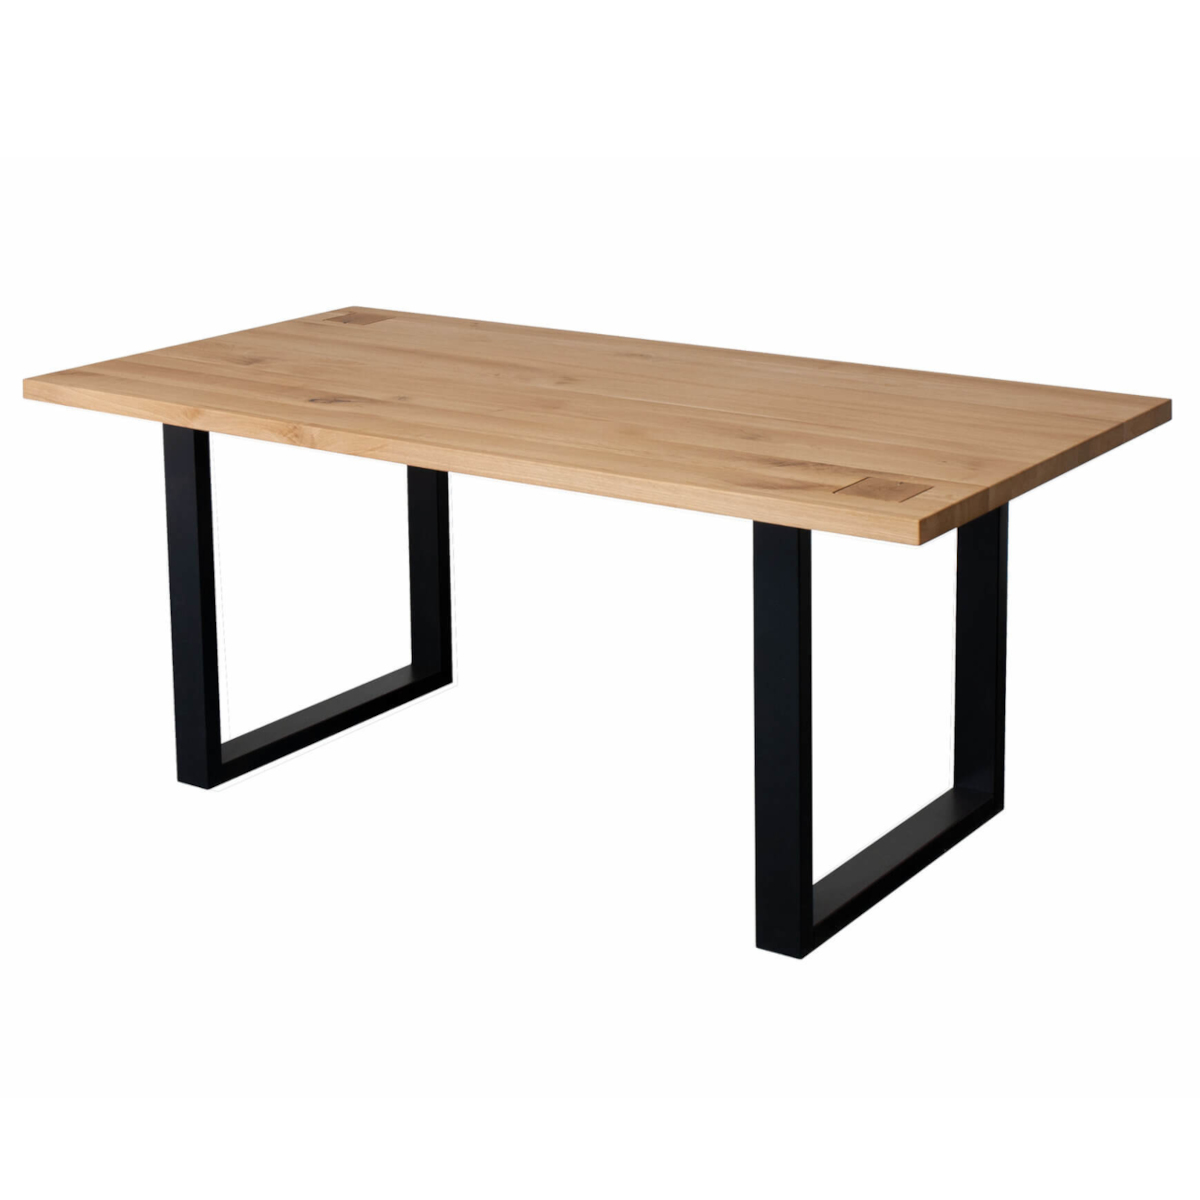 Stół dębowy HALLOW 200x100 drewniano-metalowy